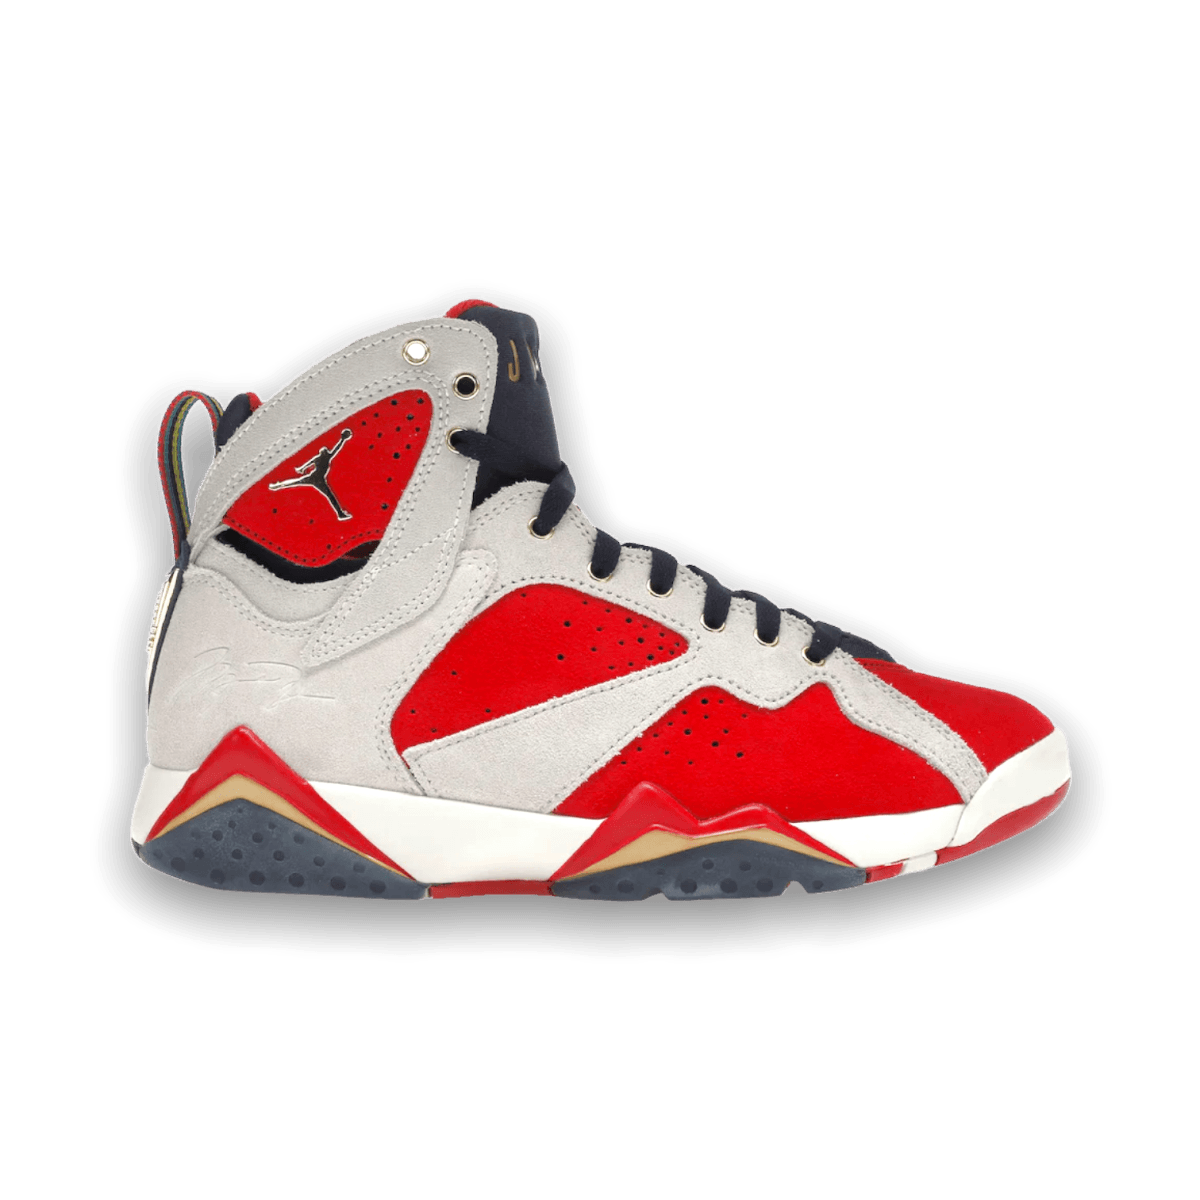 Jordan 7 Retro Trophy Room New Sheriff in Town - High Sneaker - Jawns on Fire Sneakers & Streetwear